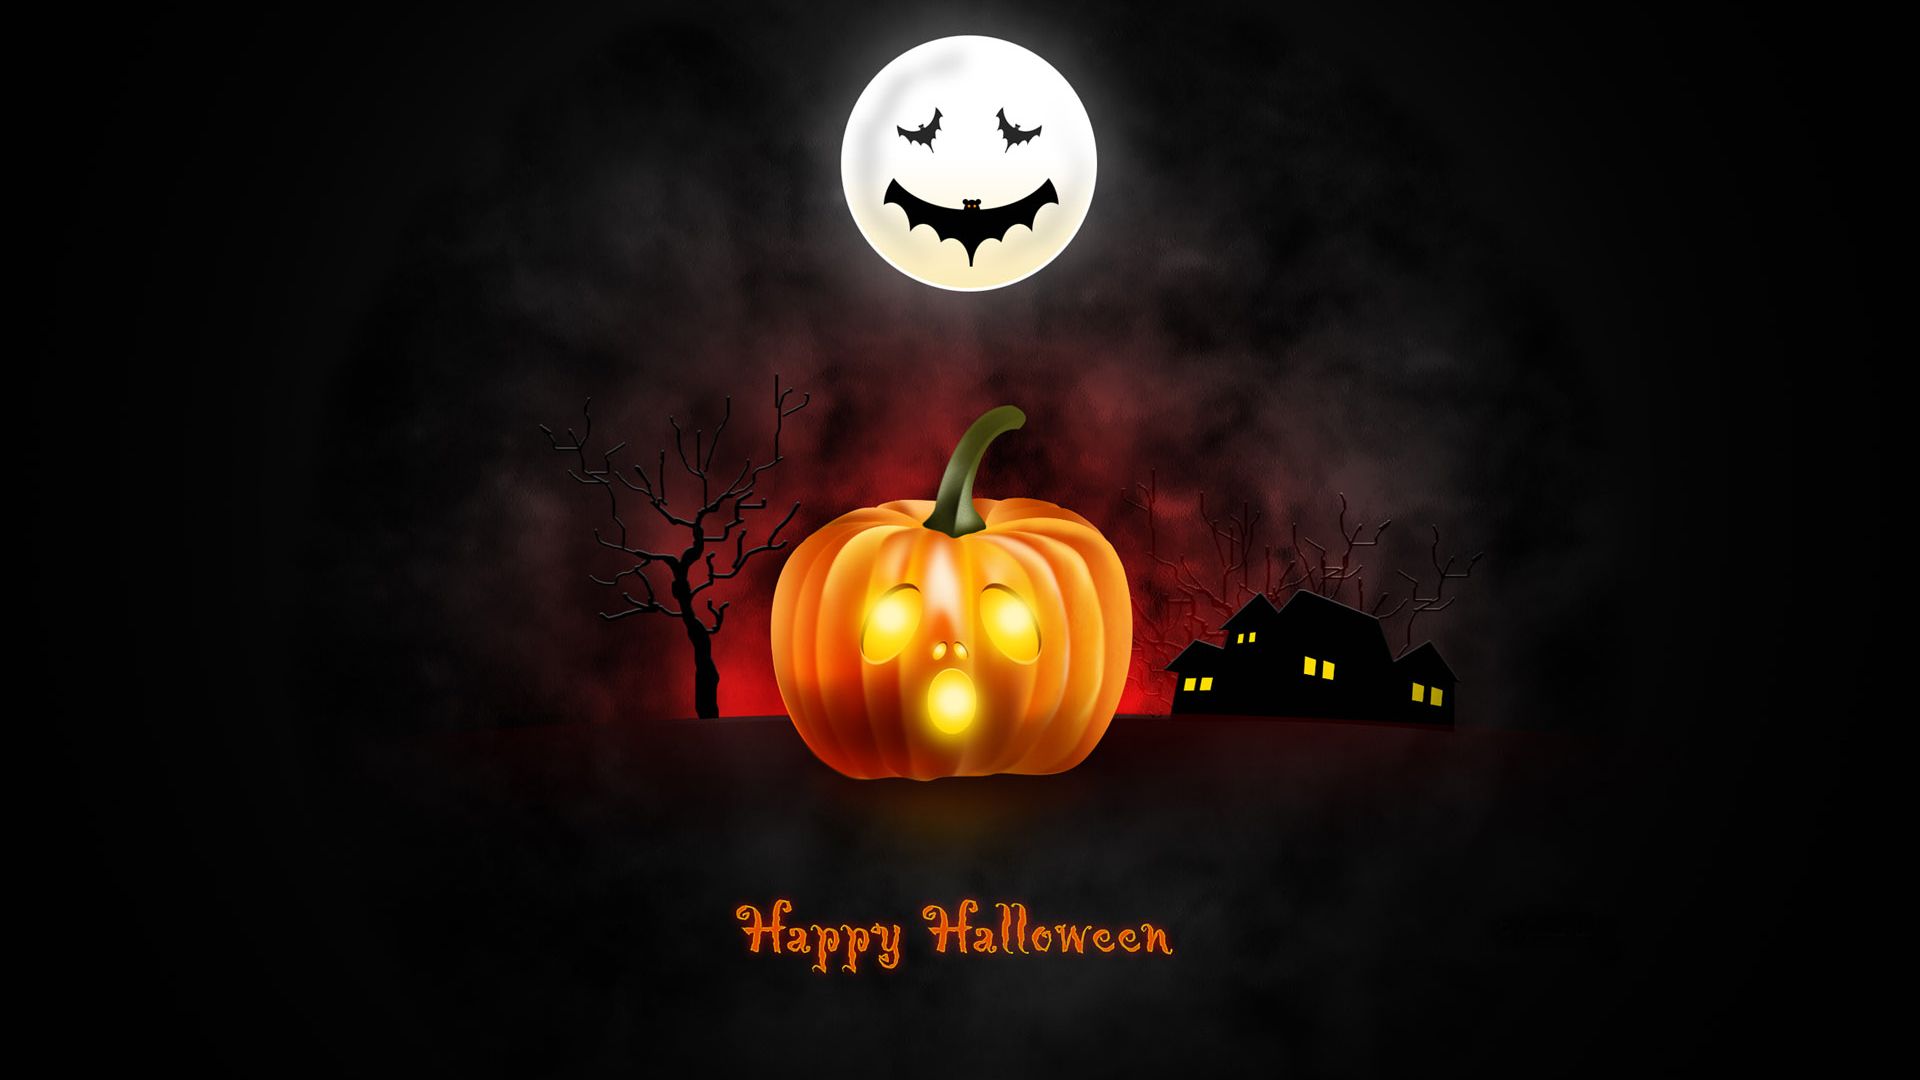 desktop wallpaper halloween dark moon pumpkin hd image picture background a9f3a7 desktop wallpaper halloween dark moon